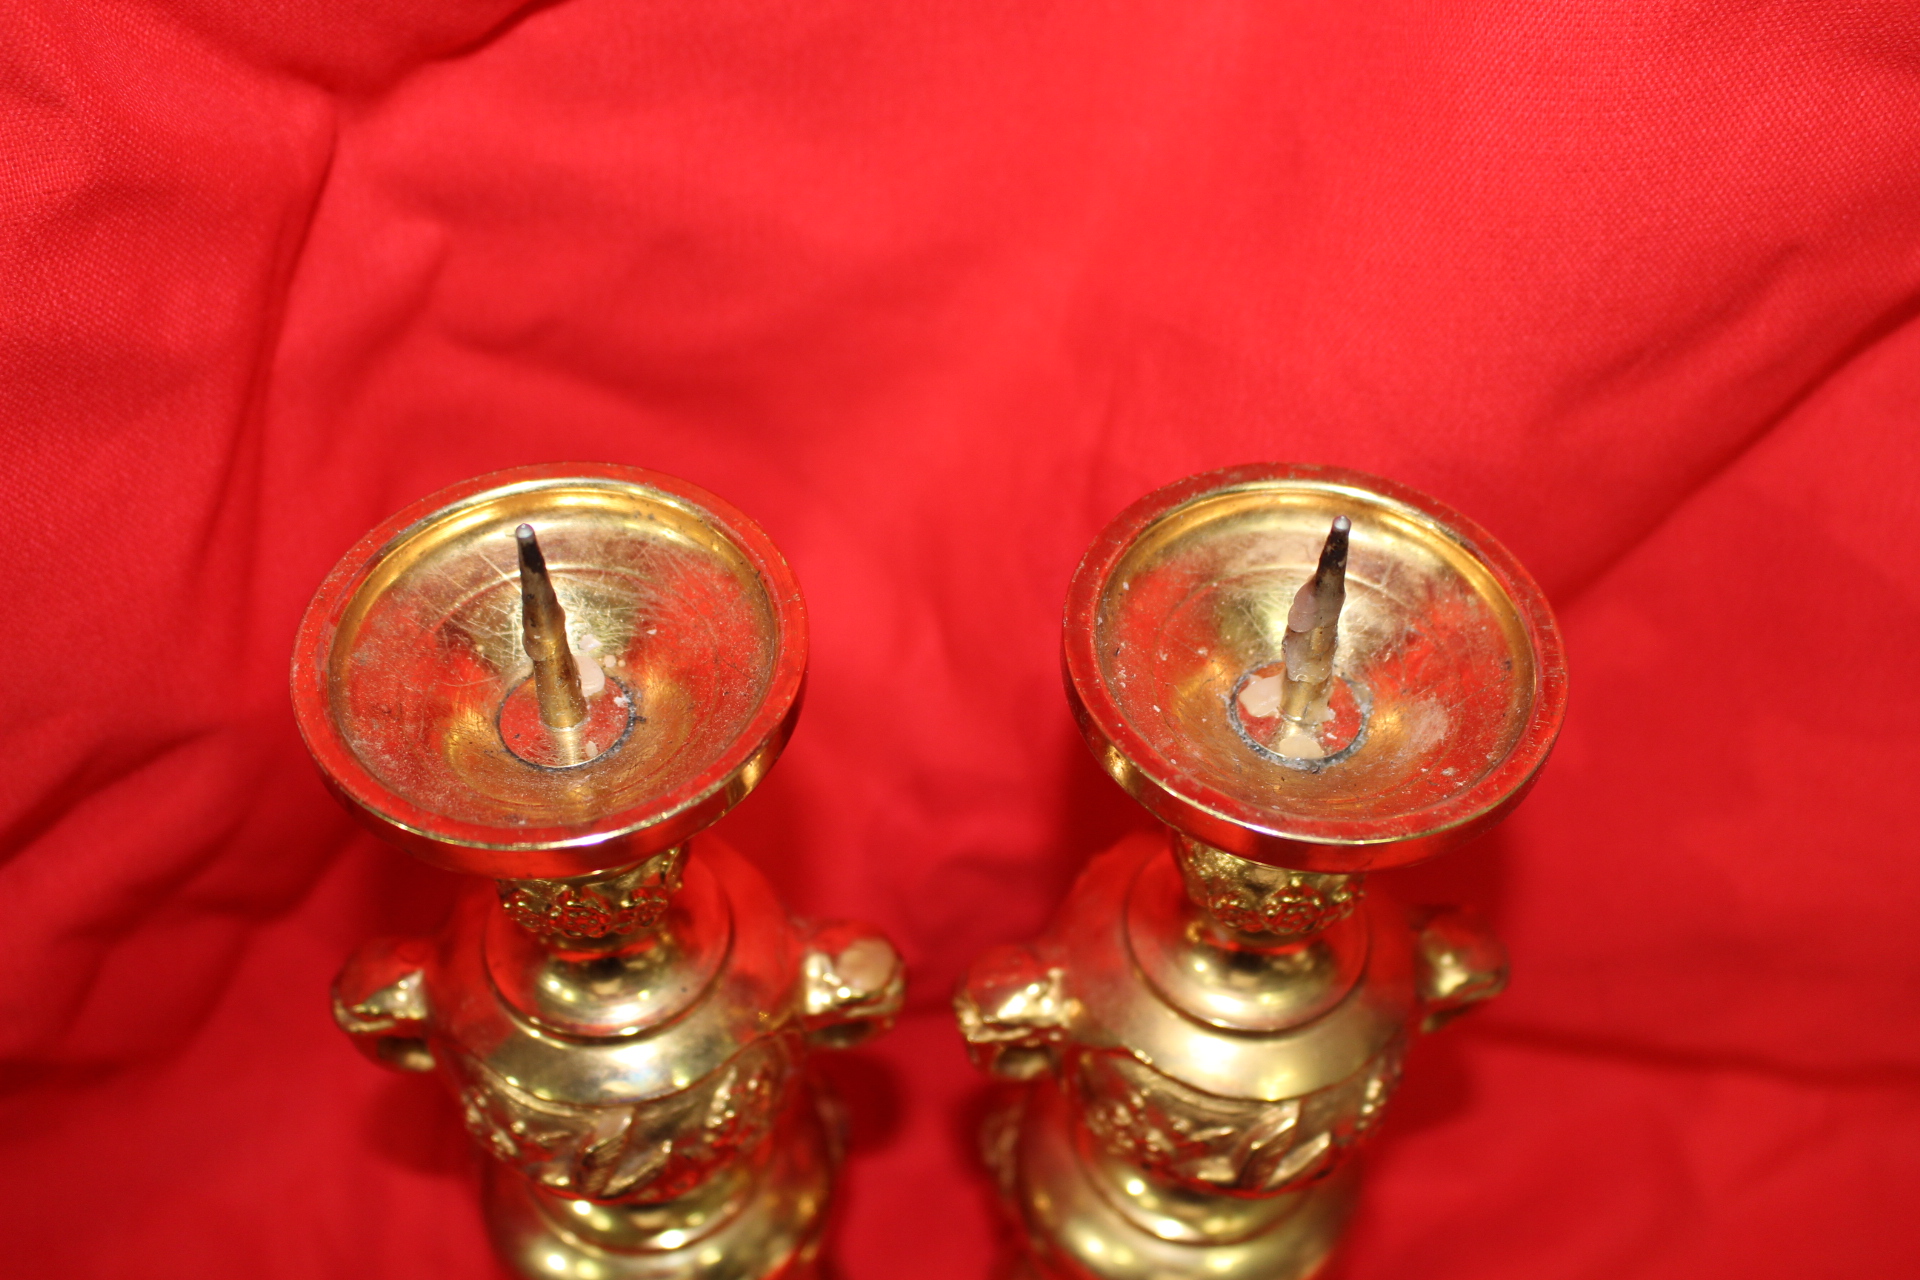 묵직한 청동에 순금(純金)채된 양각화문이귀 촛대 1쌍